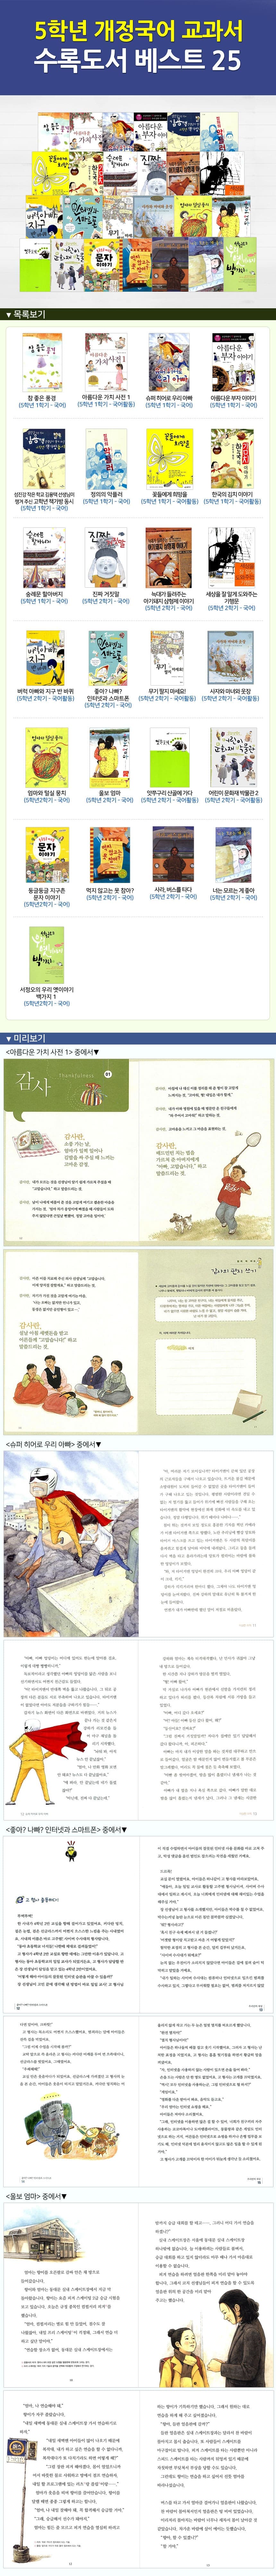 5학년 개정국어교과서 수록도서 베스트 21권(4권부족)